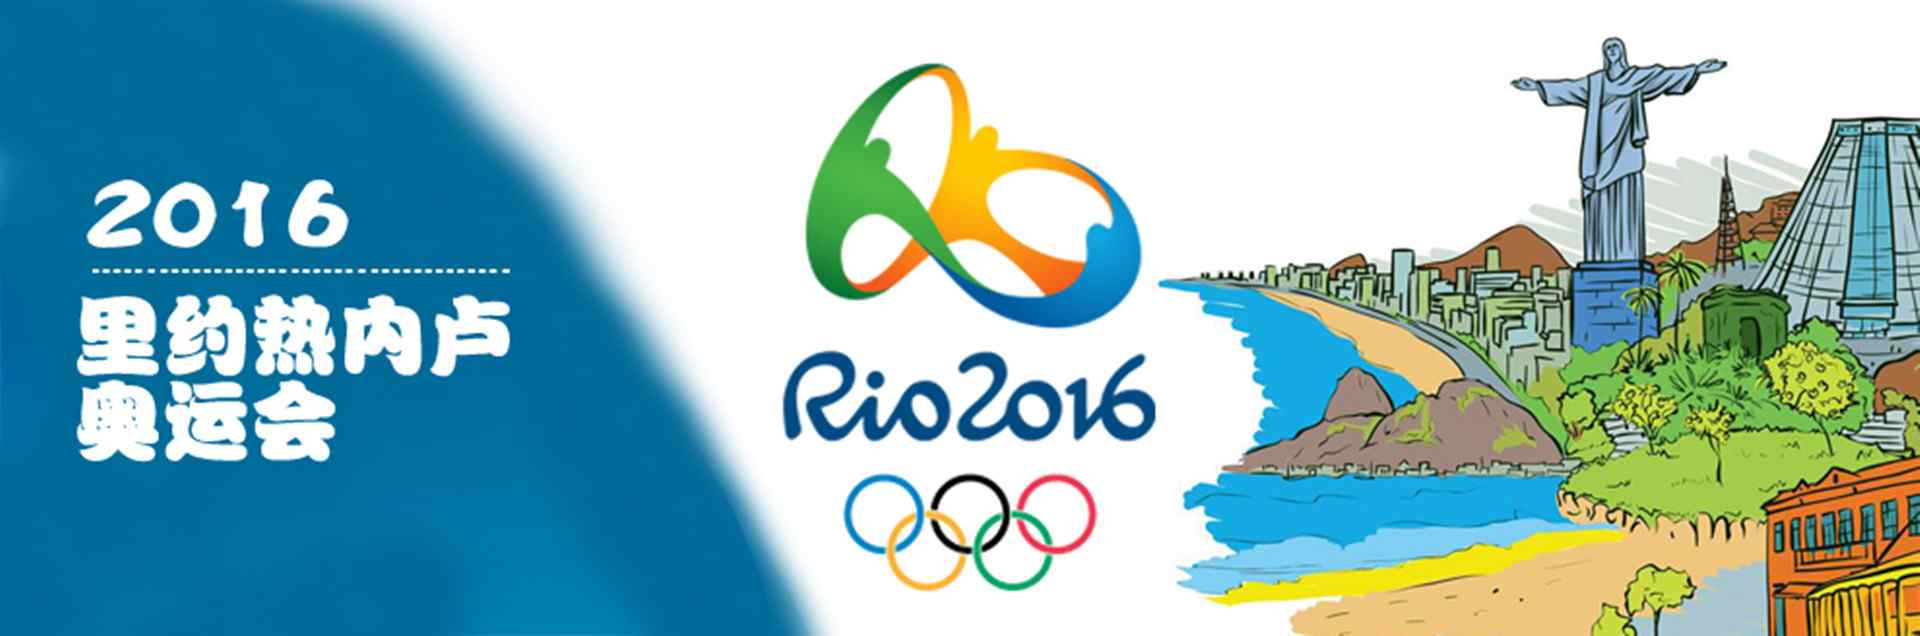 里约奥运会_2016年奥运会_运动员比赛壁纸_运动员领奖壁纸